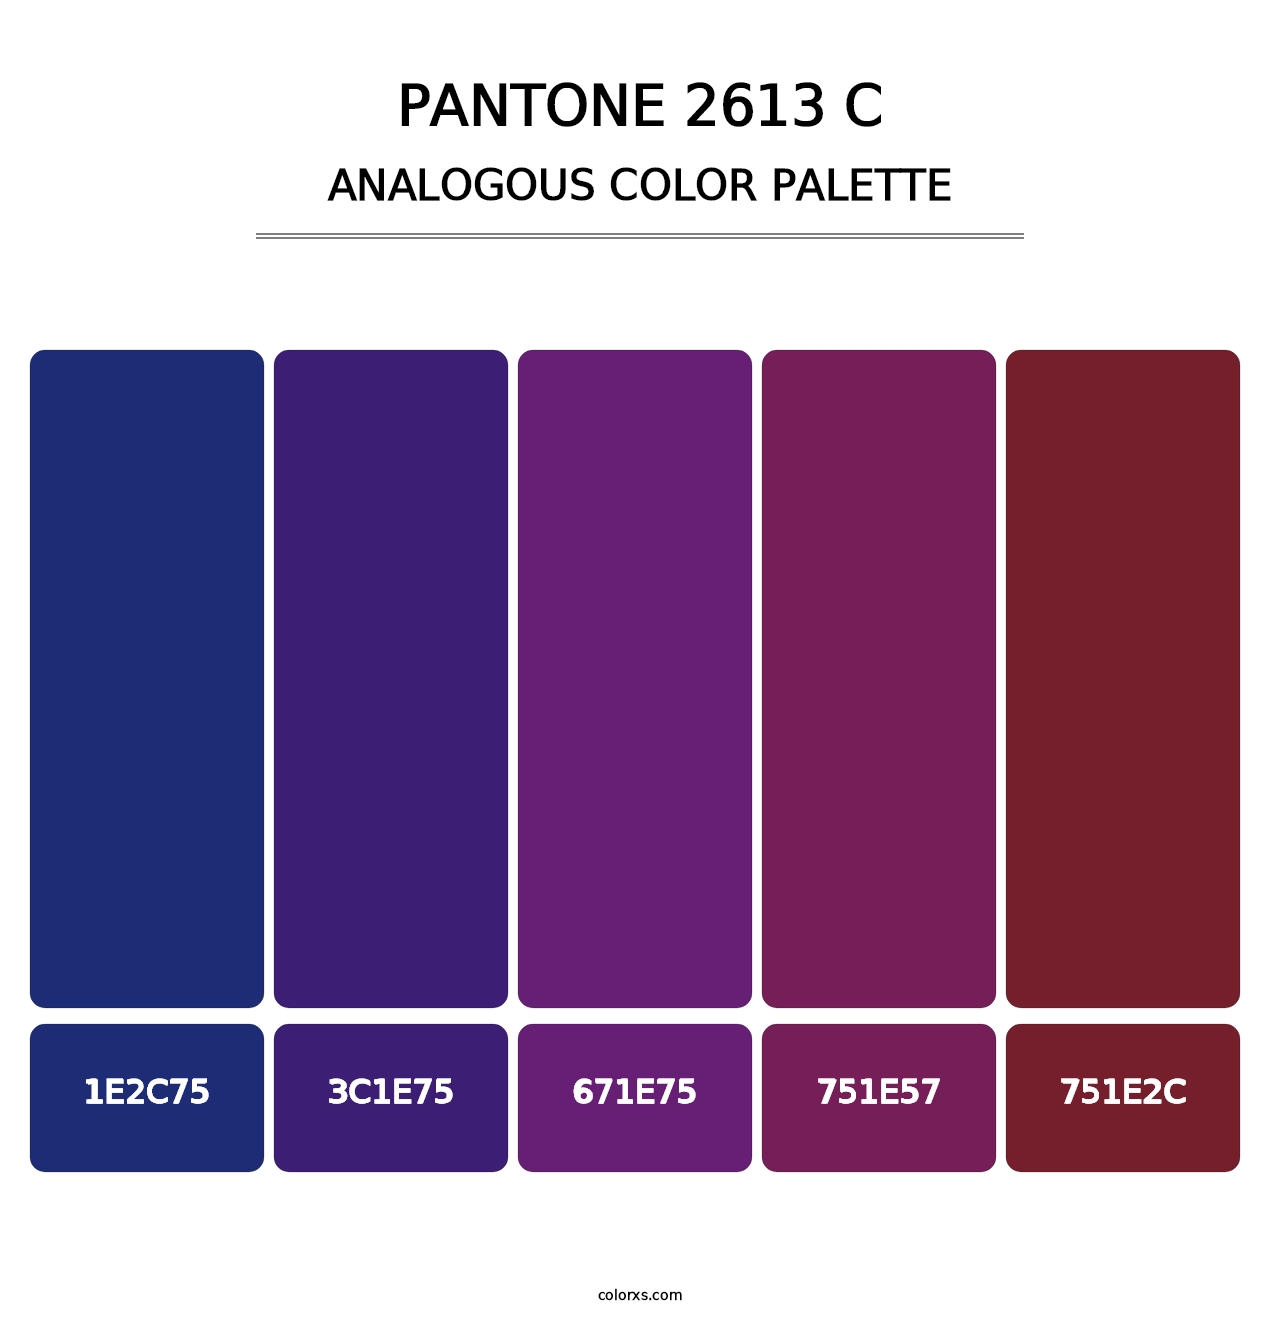 PANTONE 2613 C - Analogous Color Palette